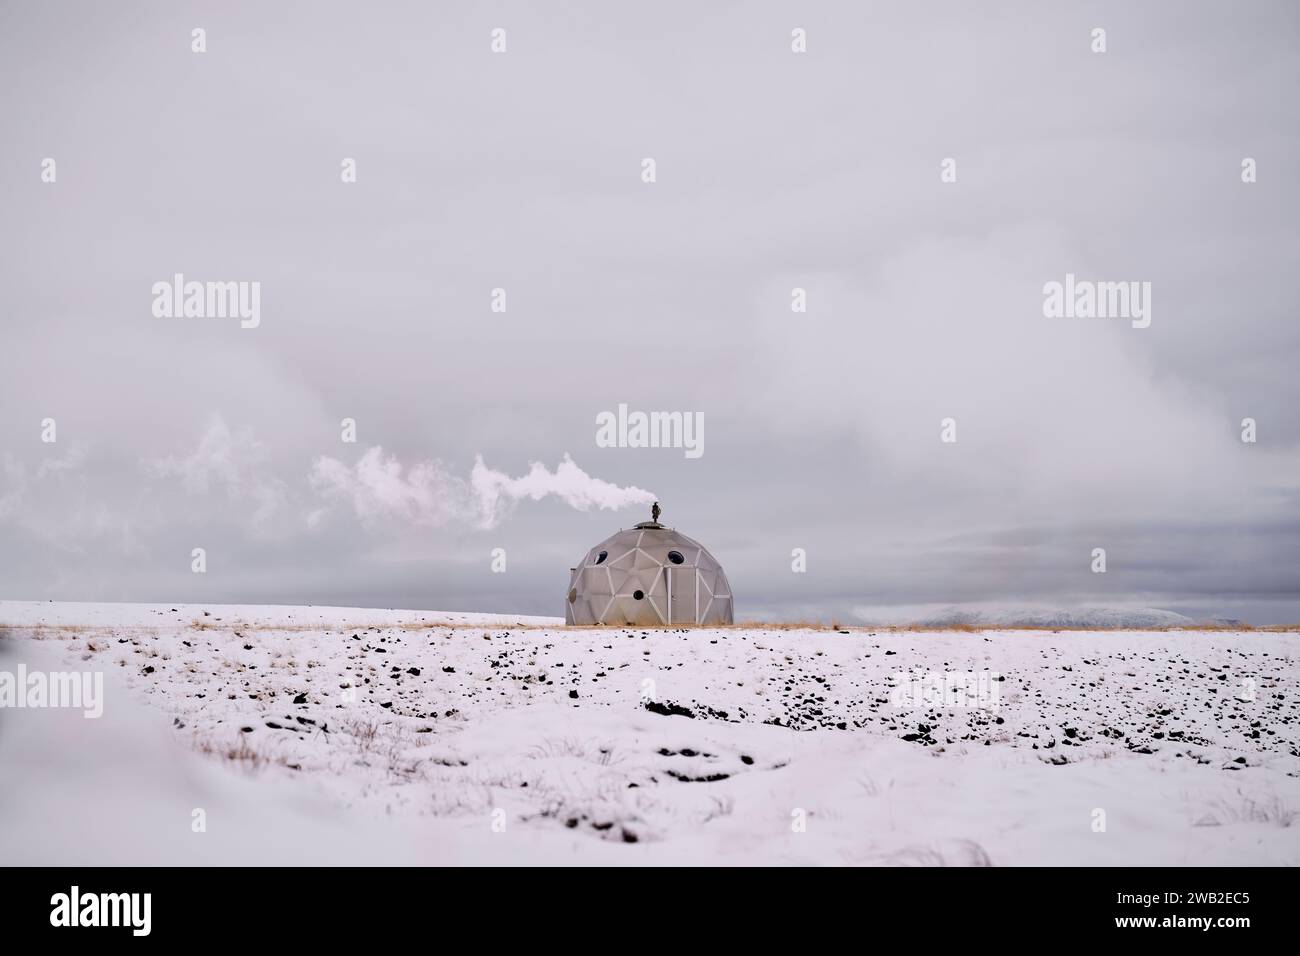 Igloo fumé sur terrain enneigé contre ciel nuageux en hiver Banque D'Images